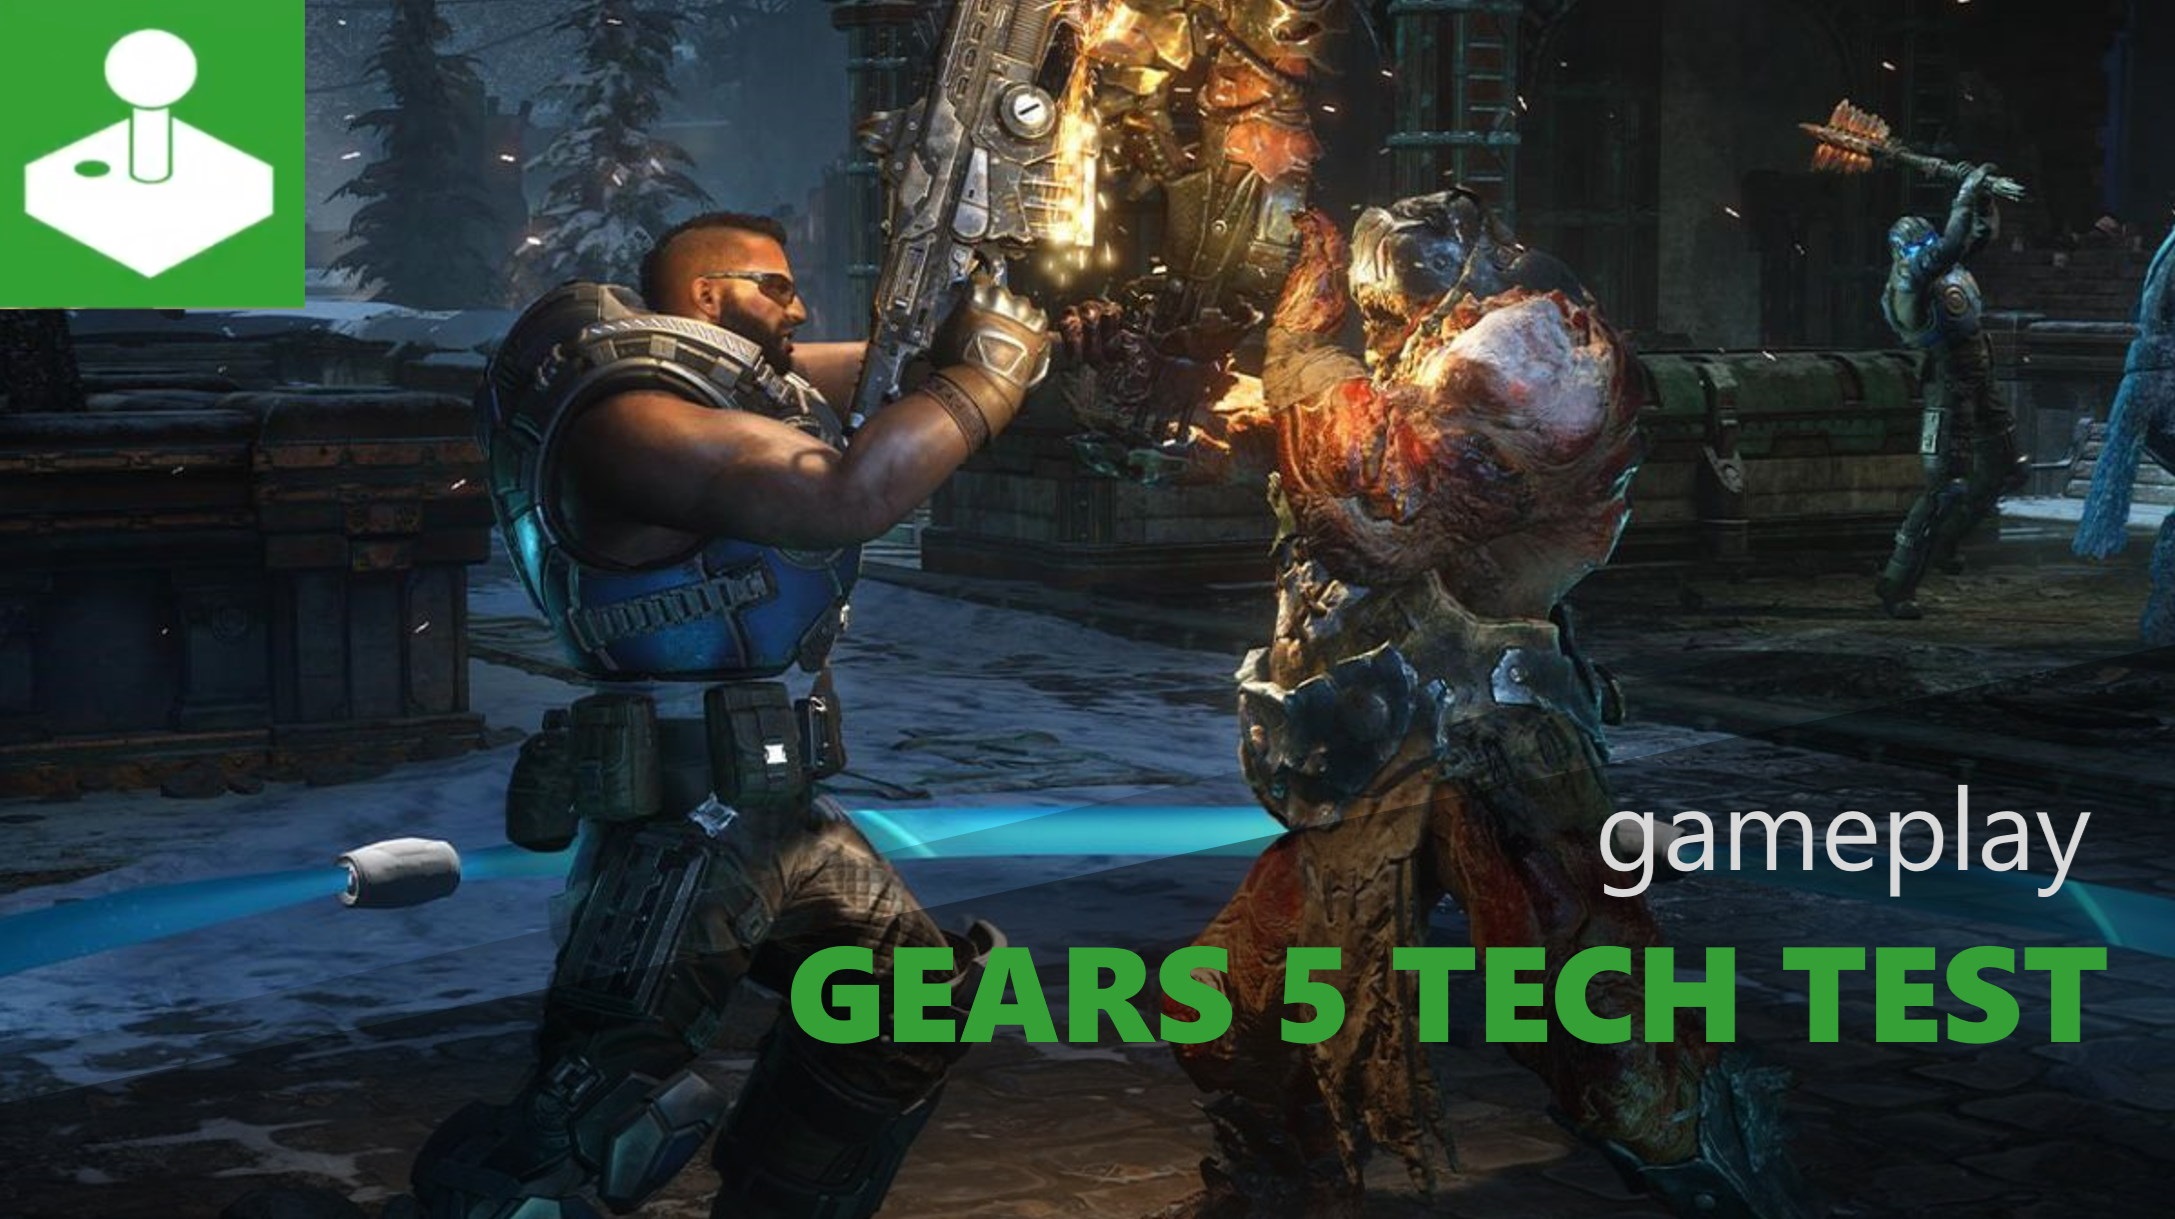 Gears 5 - tech test gameplay